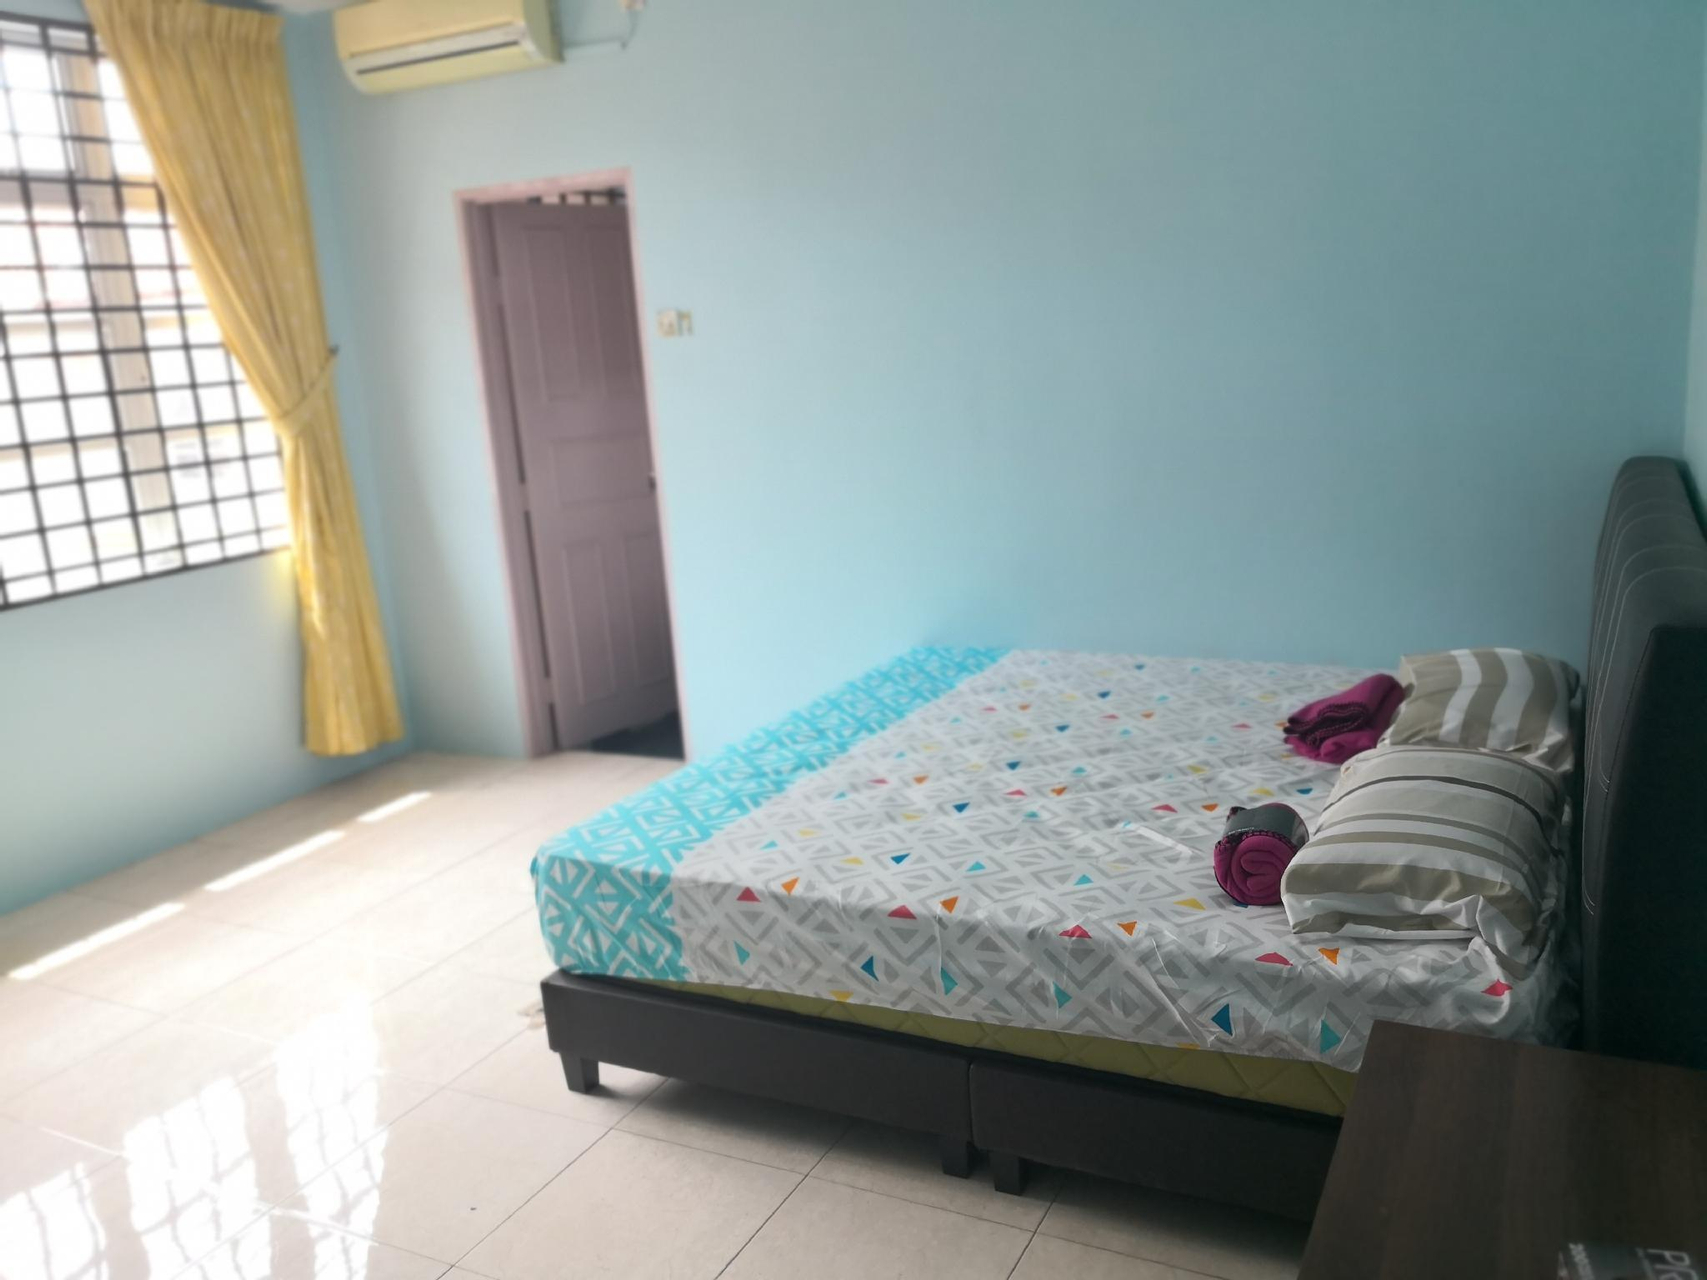 Bedroom 4, Semi D Bungalow, Ipoh Area, 6 bedrooms 5 baths, Kinta